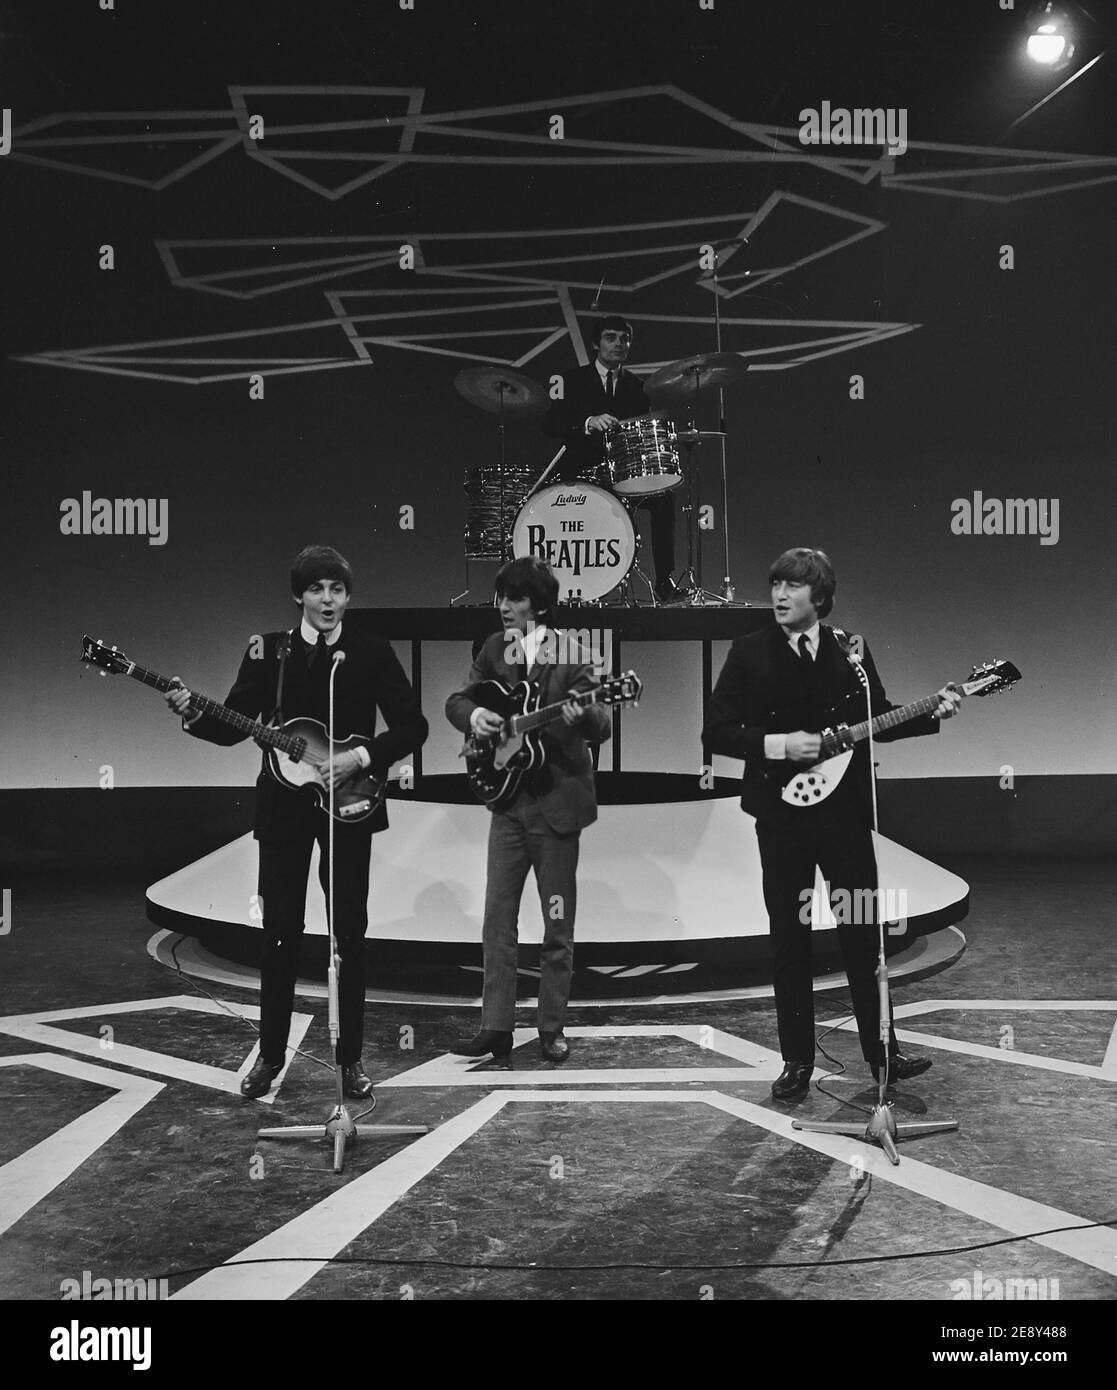 Televisione in Olanda / Paesi Bassi (i Beatles senza Ringo Starr che al momento era malato, sostituito da Jimmy Nicolo) Foto Stock